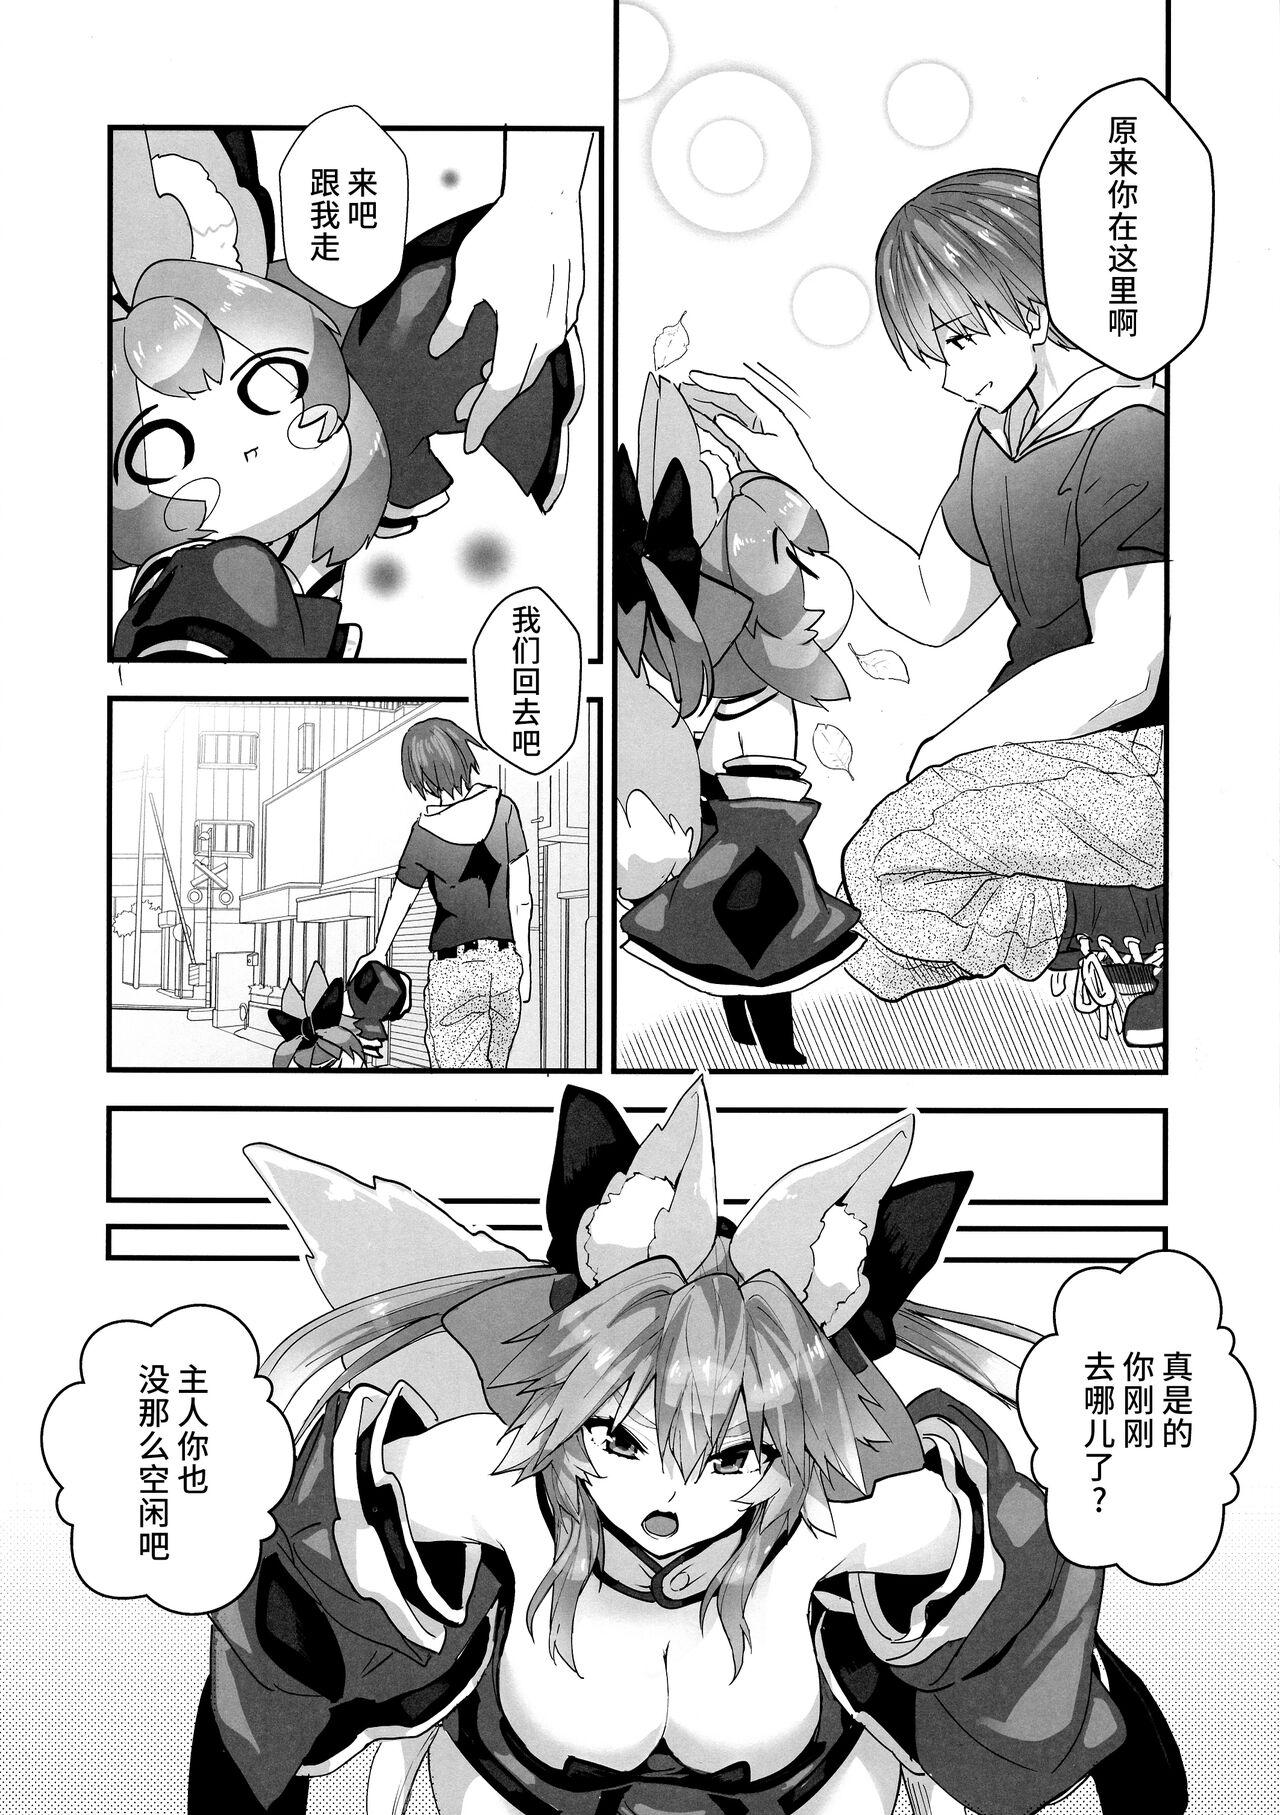 Stepsis Fuero! Tamamo-chan! - Fate grand order Classy - Page 6